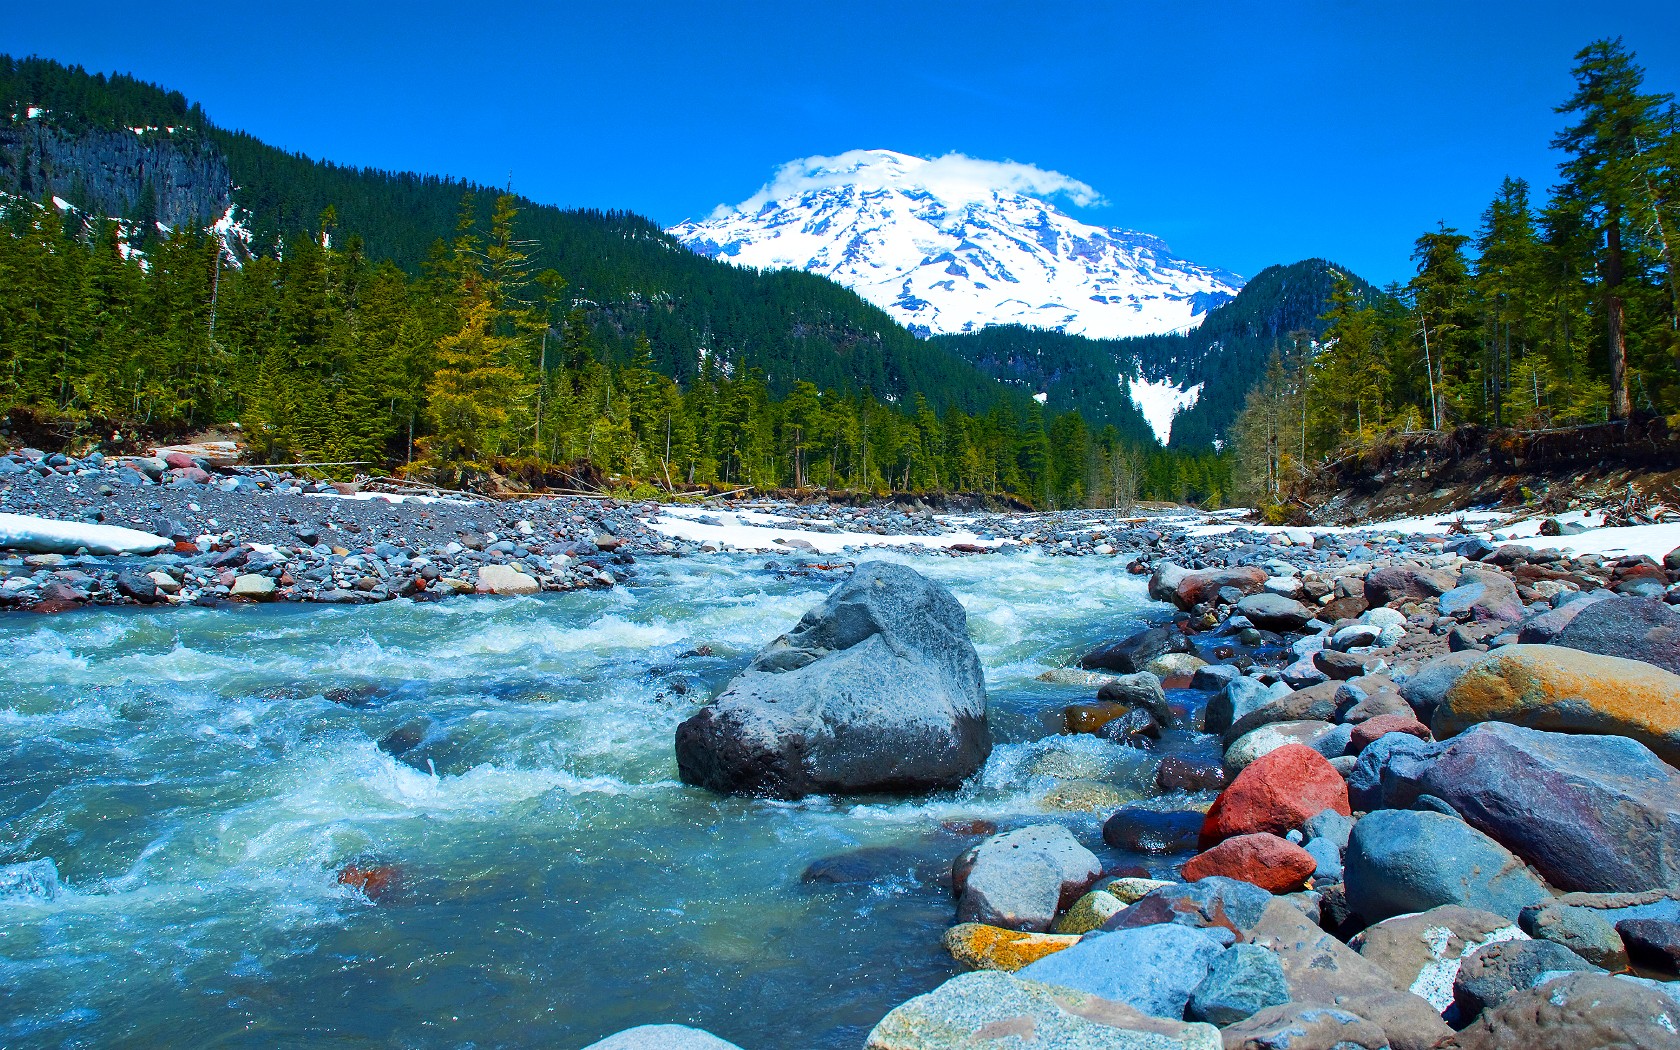 River Stones Mountains Mount Rainier National Park Washington State USA 1680x1050